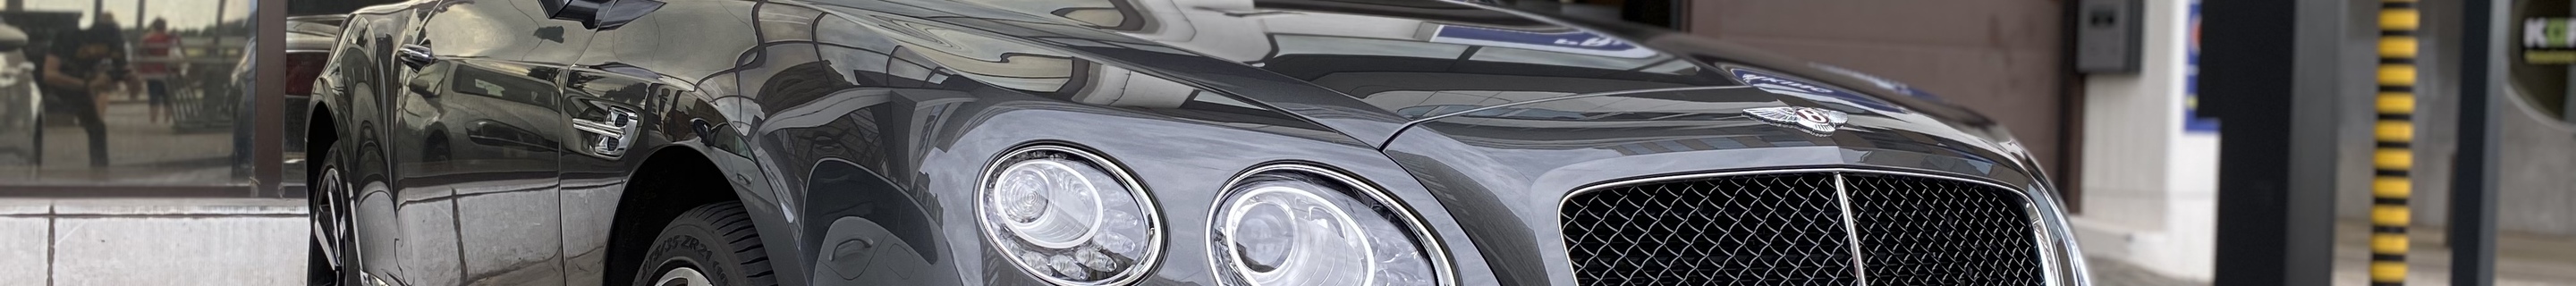 Bentley Continental GTC V8 S 2016